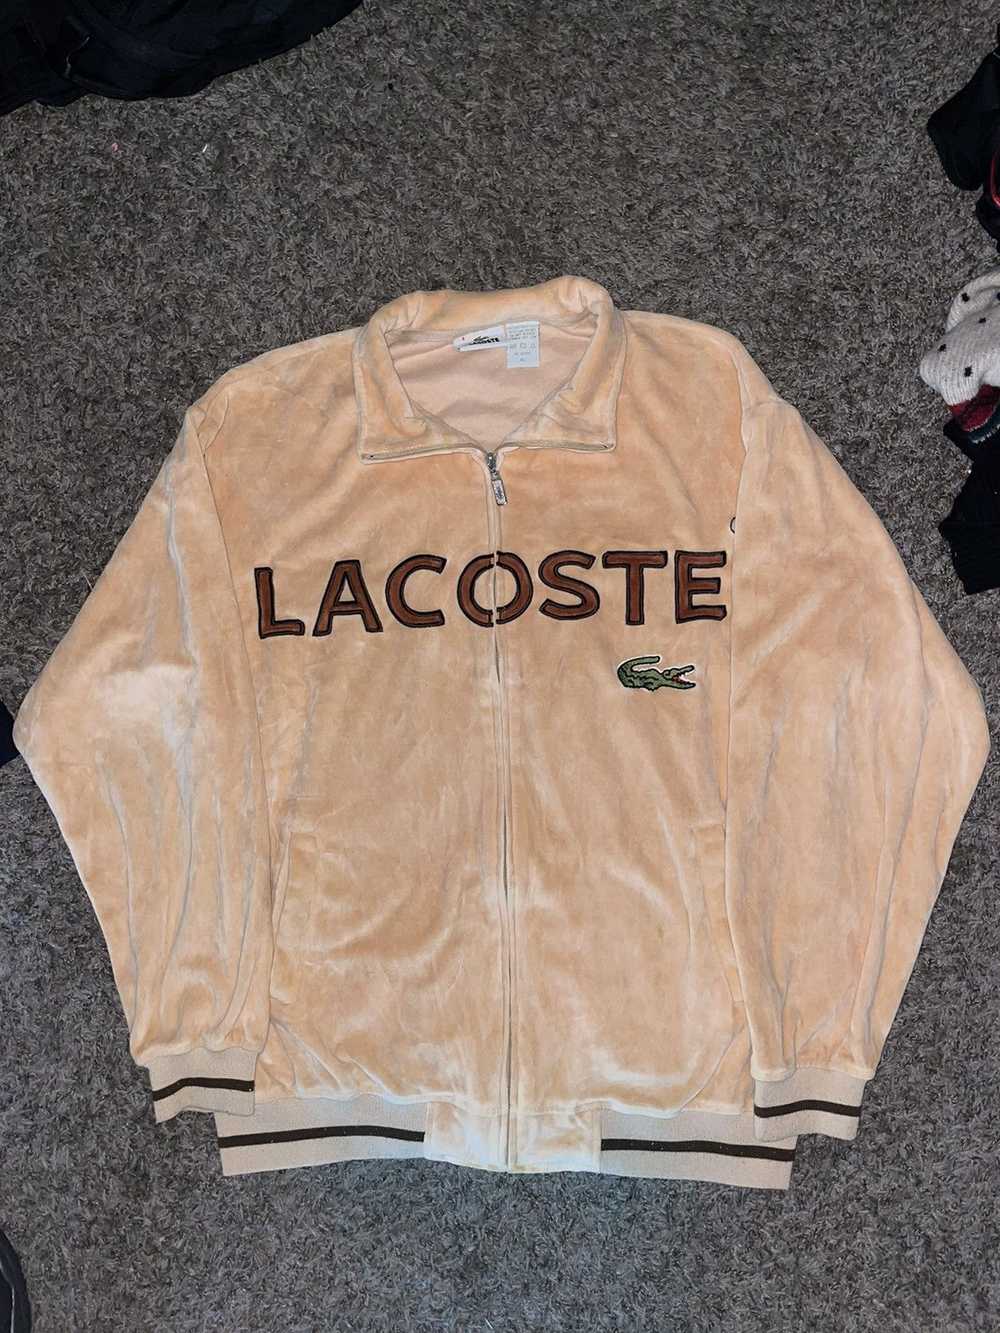 Lacoste Vintage Lacoste Velour Track Suit - image 2